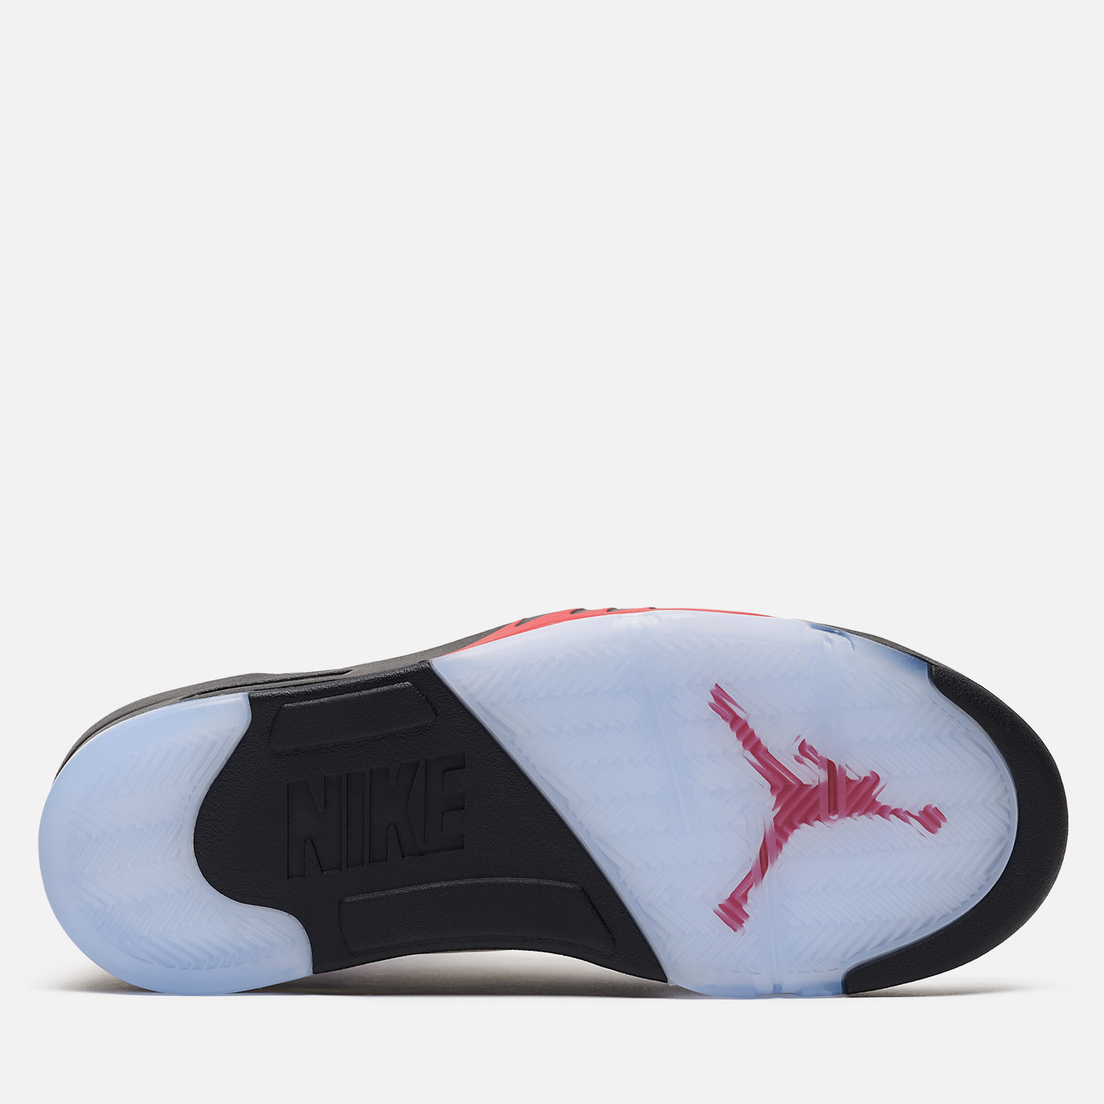 Jordan Мужские кроссовки Air Jordan 5 Retro